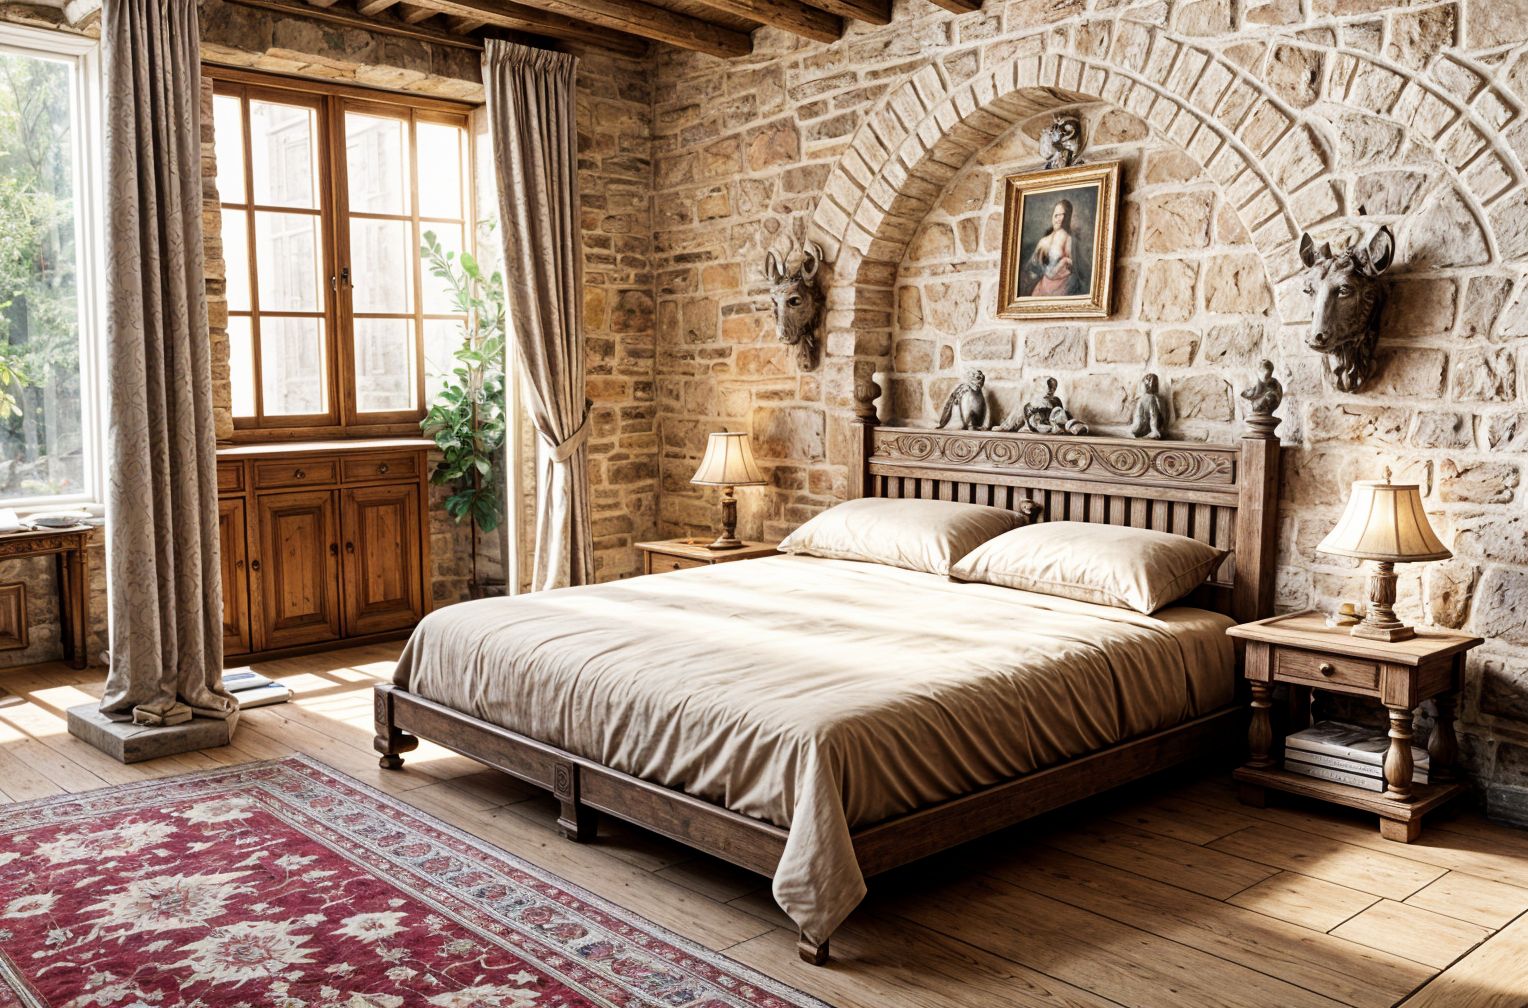 Medieval style Bedroom